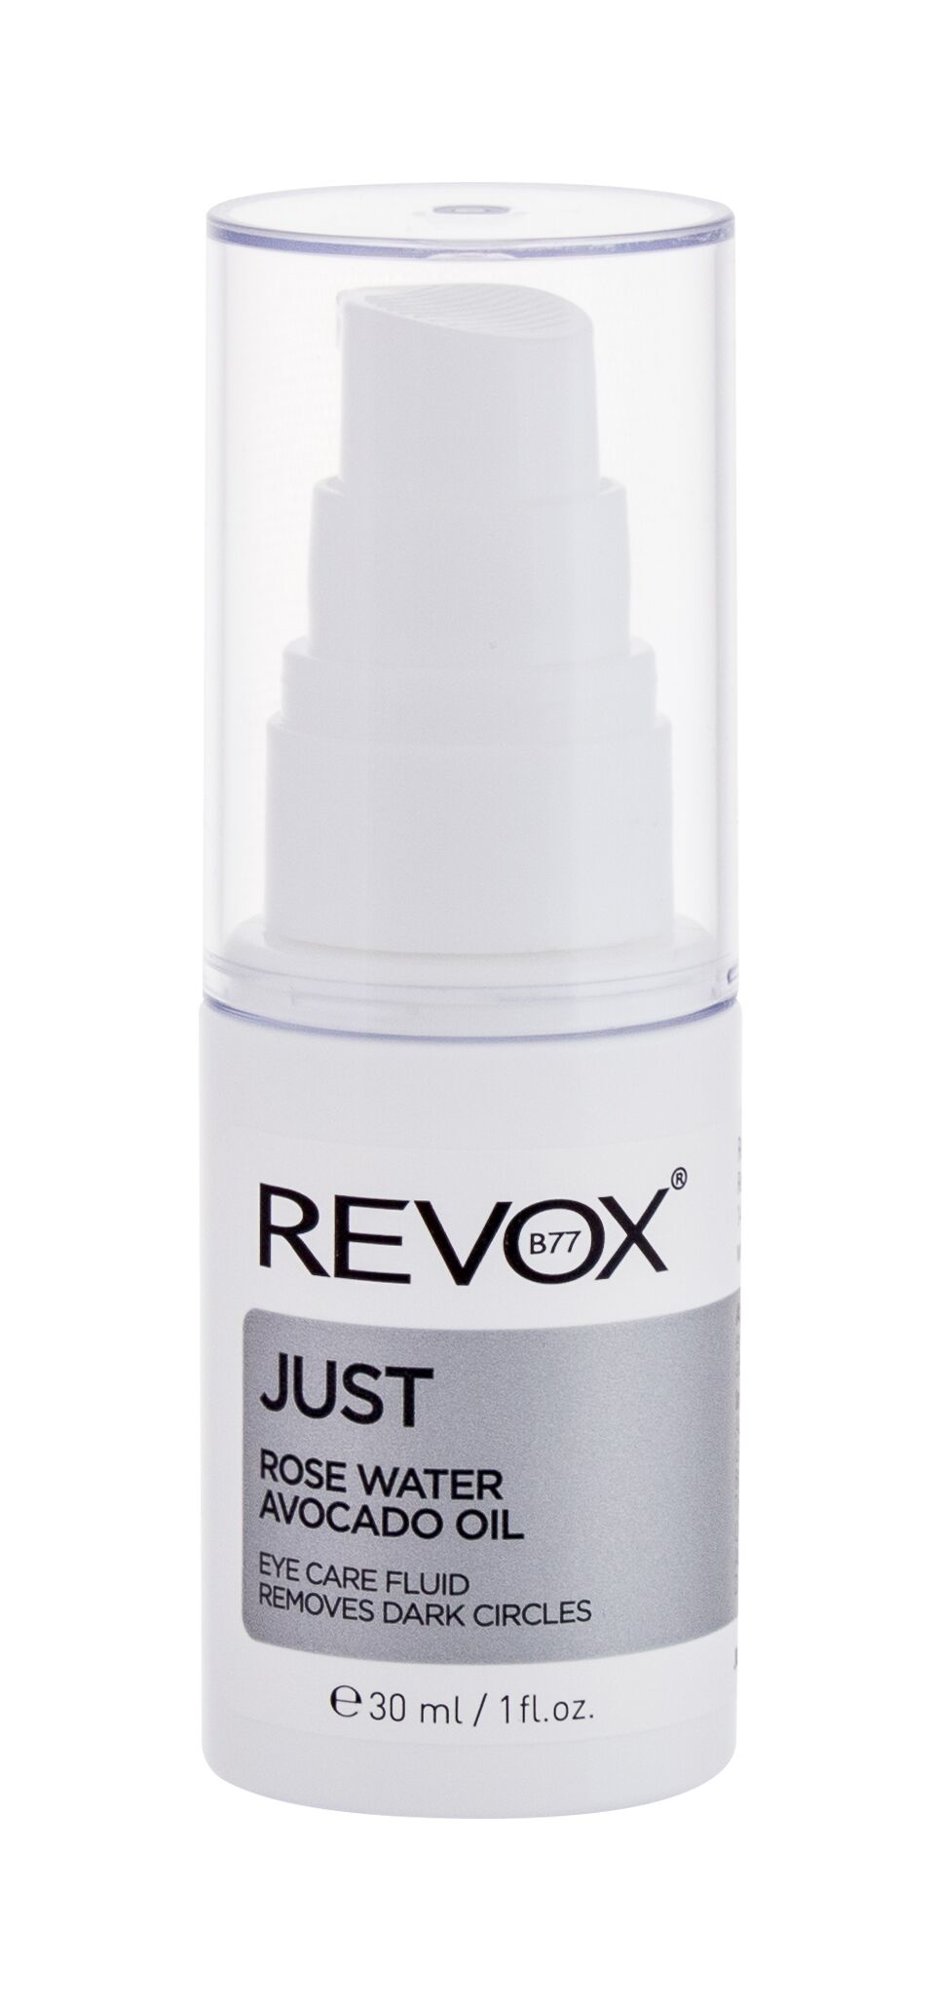 Revox Just Rose Water Avocado Oil Fluid paakių kremas